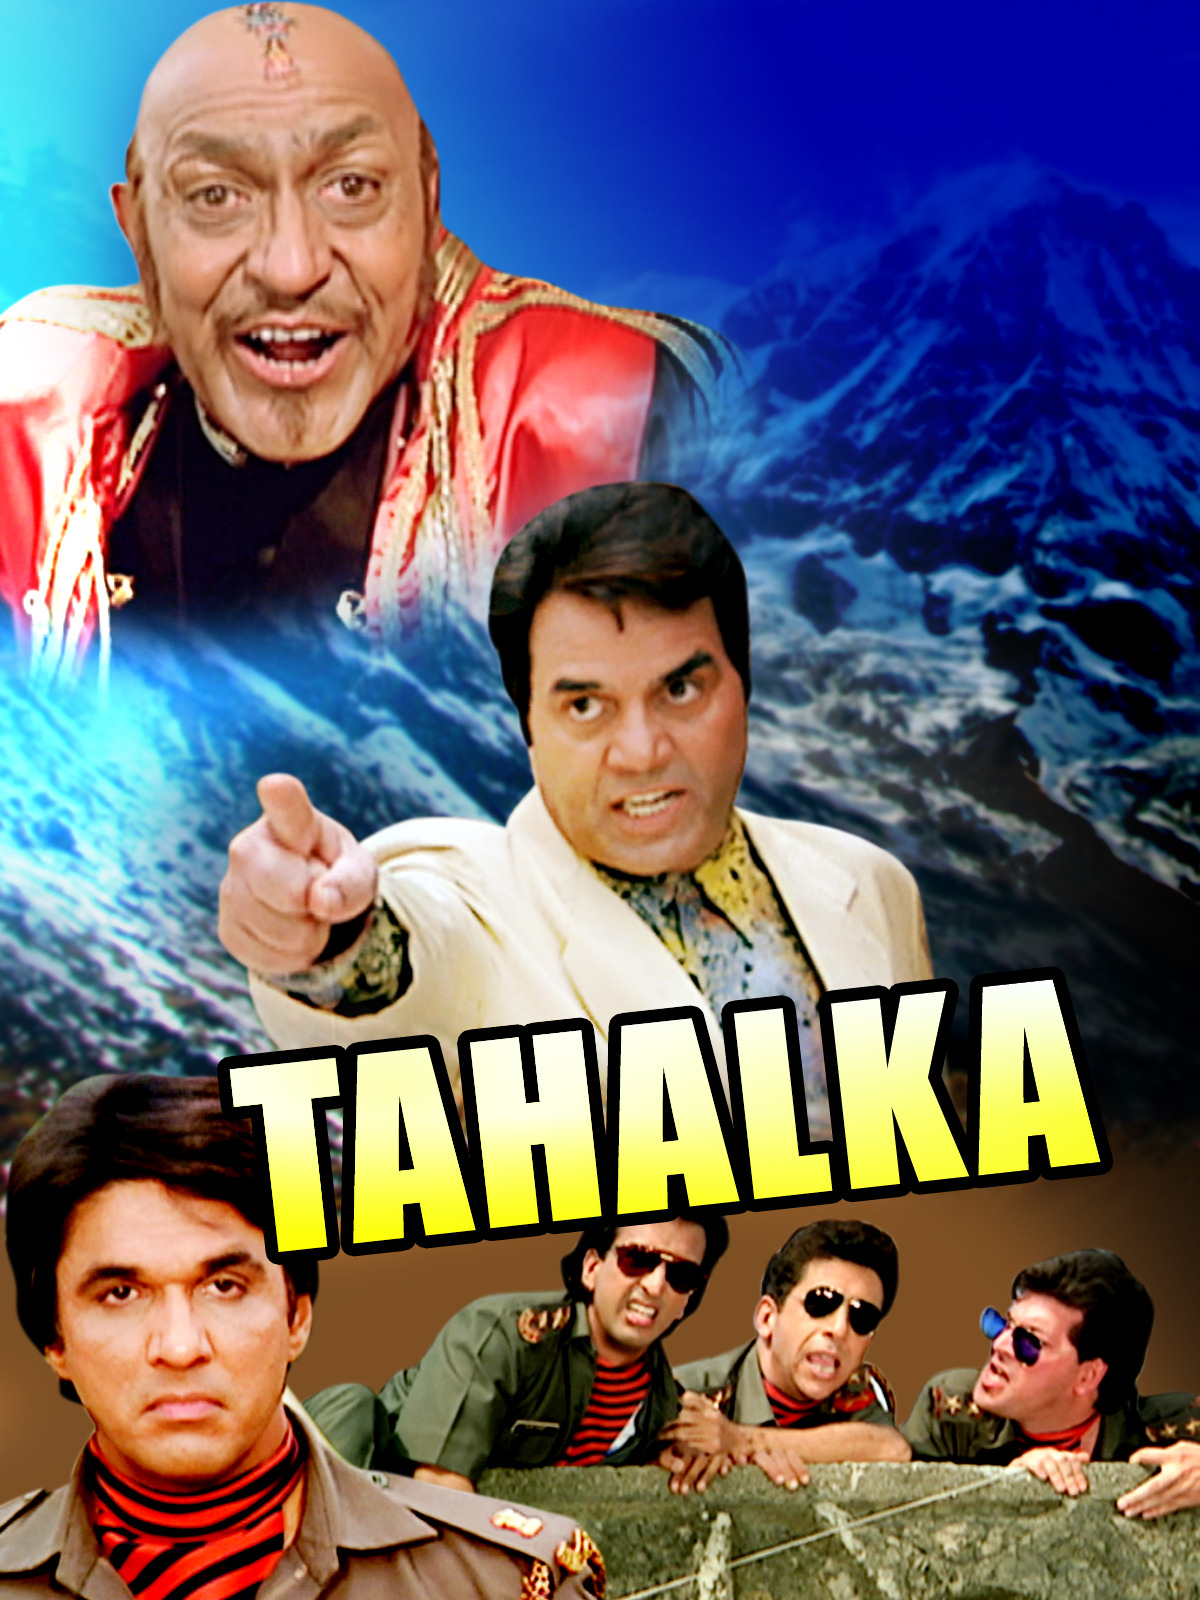 Tahalka movie download 720p filmywap